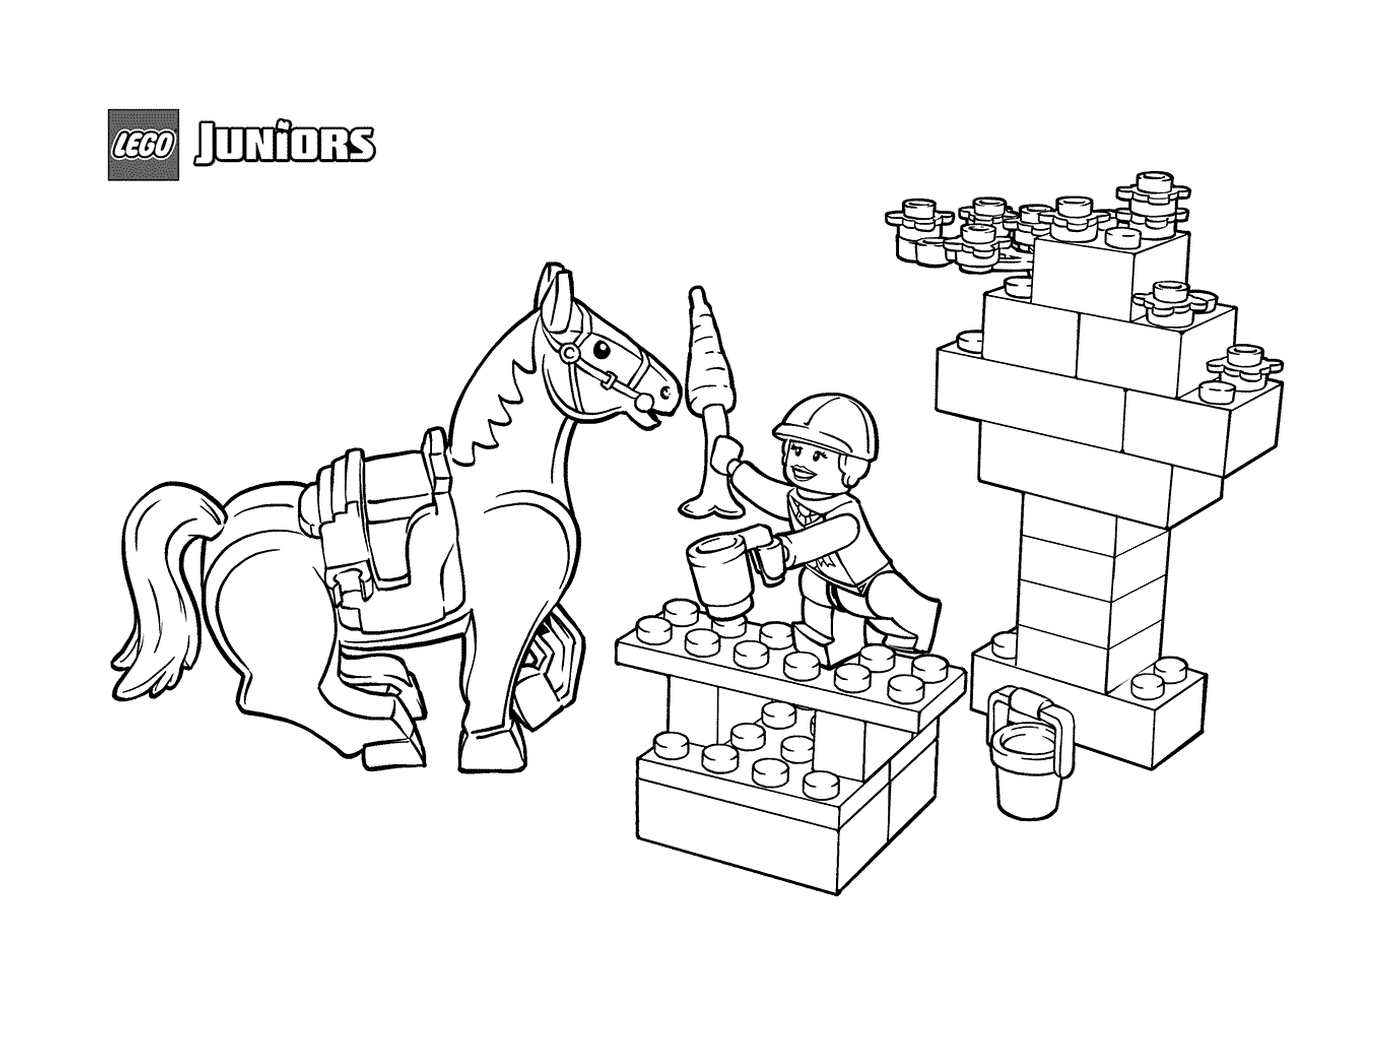  Snack equino in LEGO Junior 